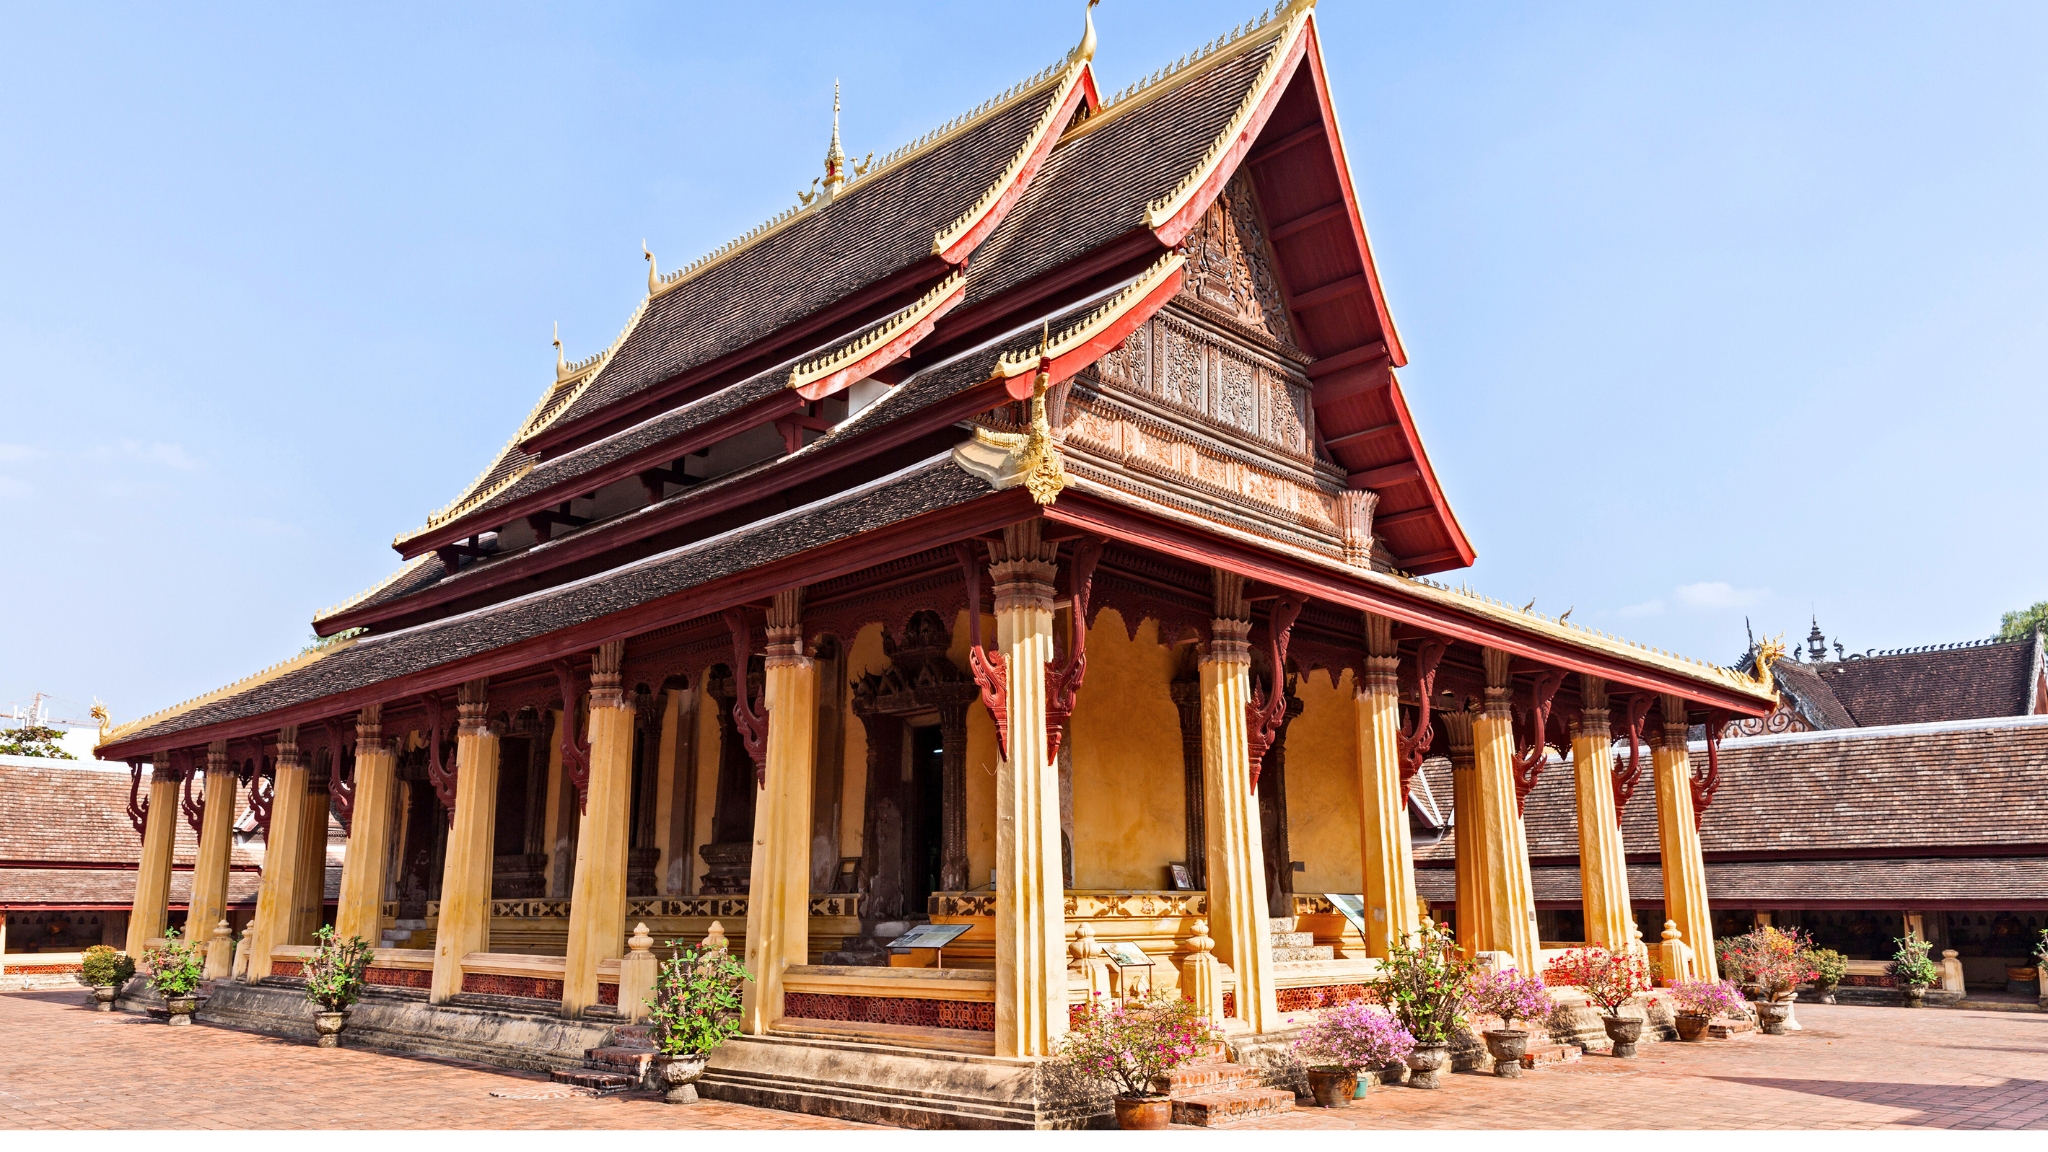 Day 13 Vientiane's Oldest Temple Wat Si Saket